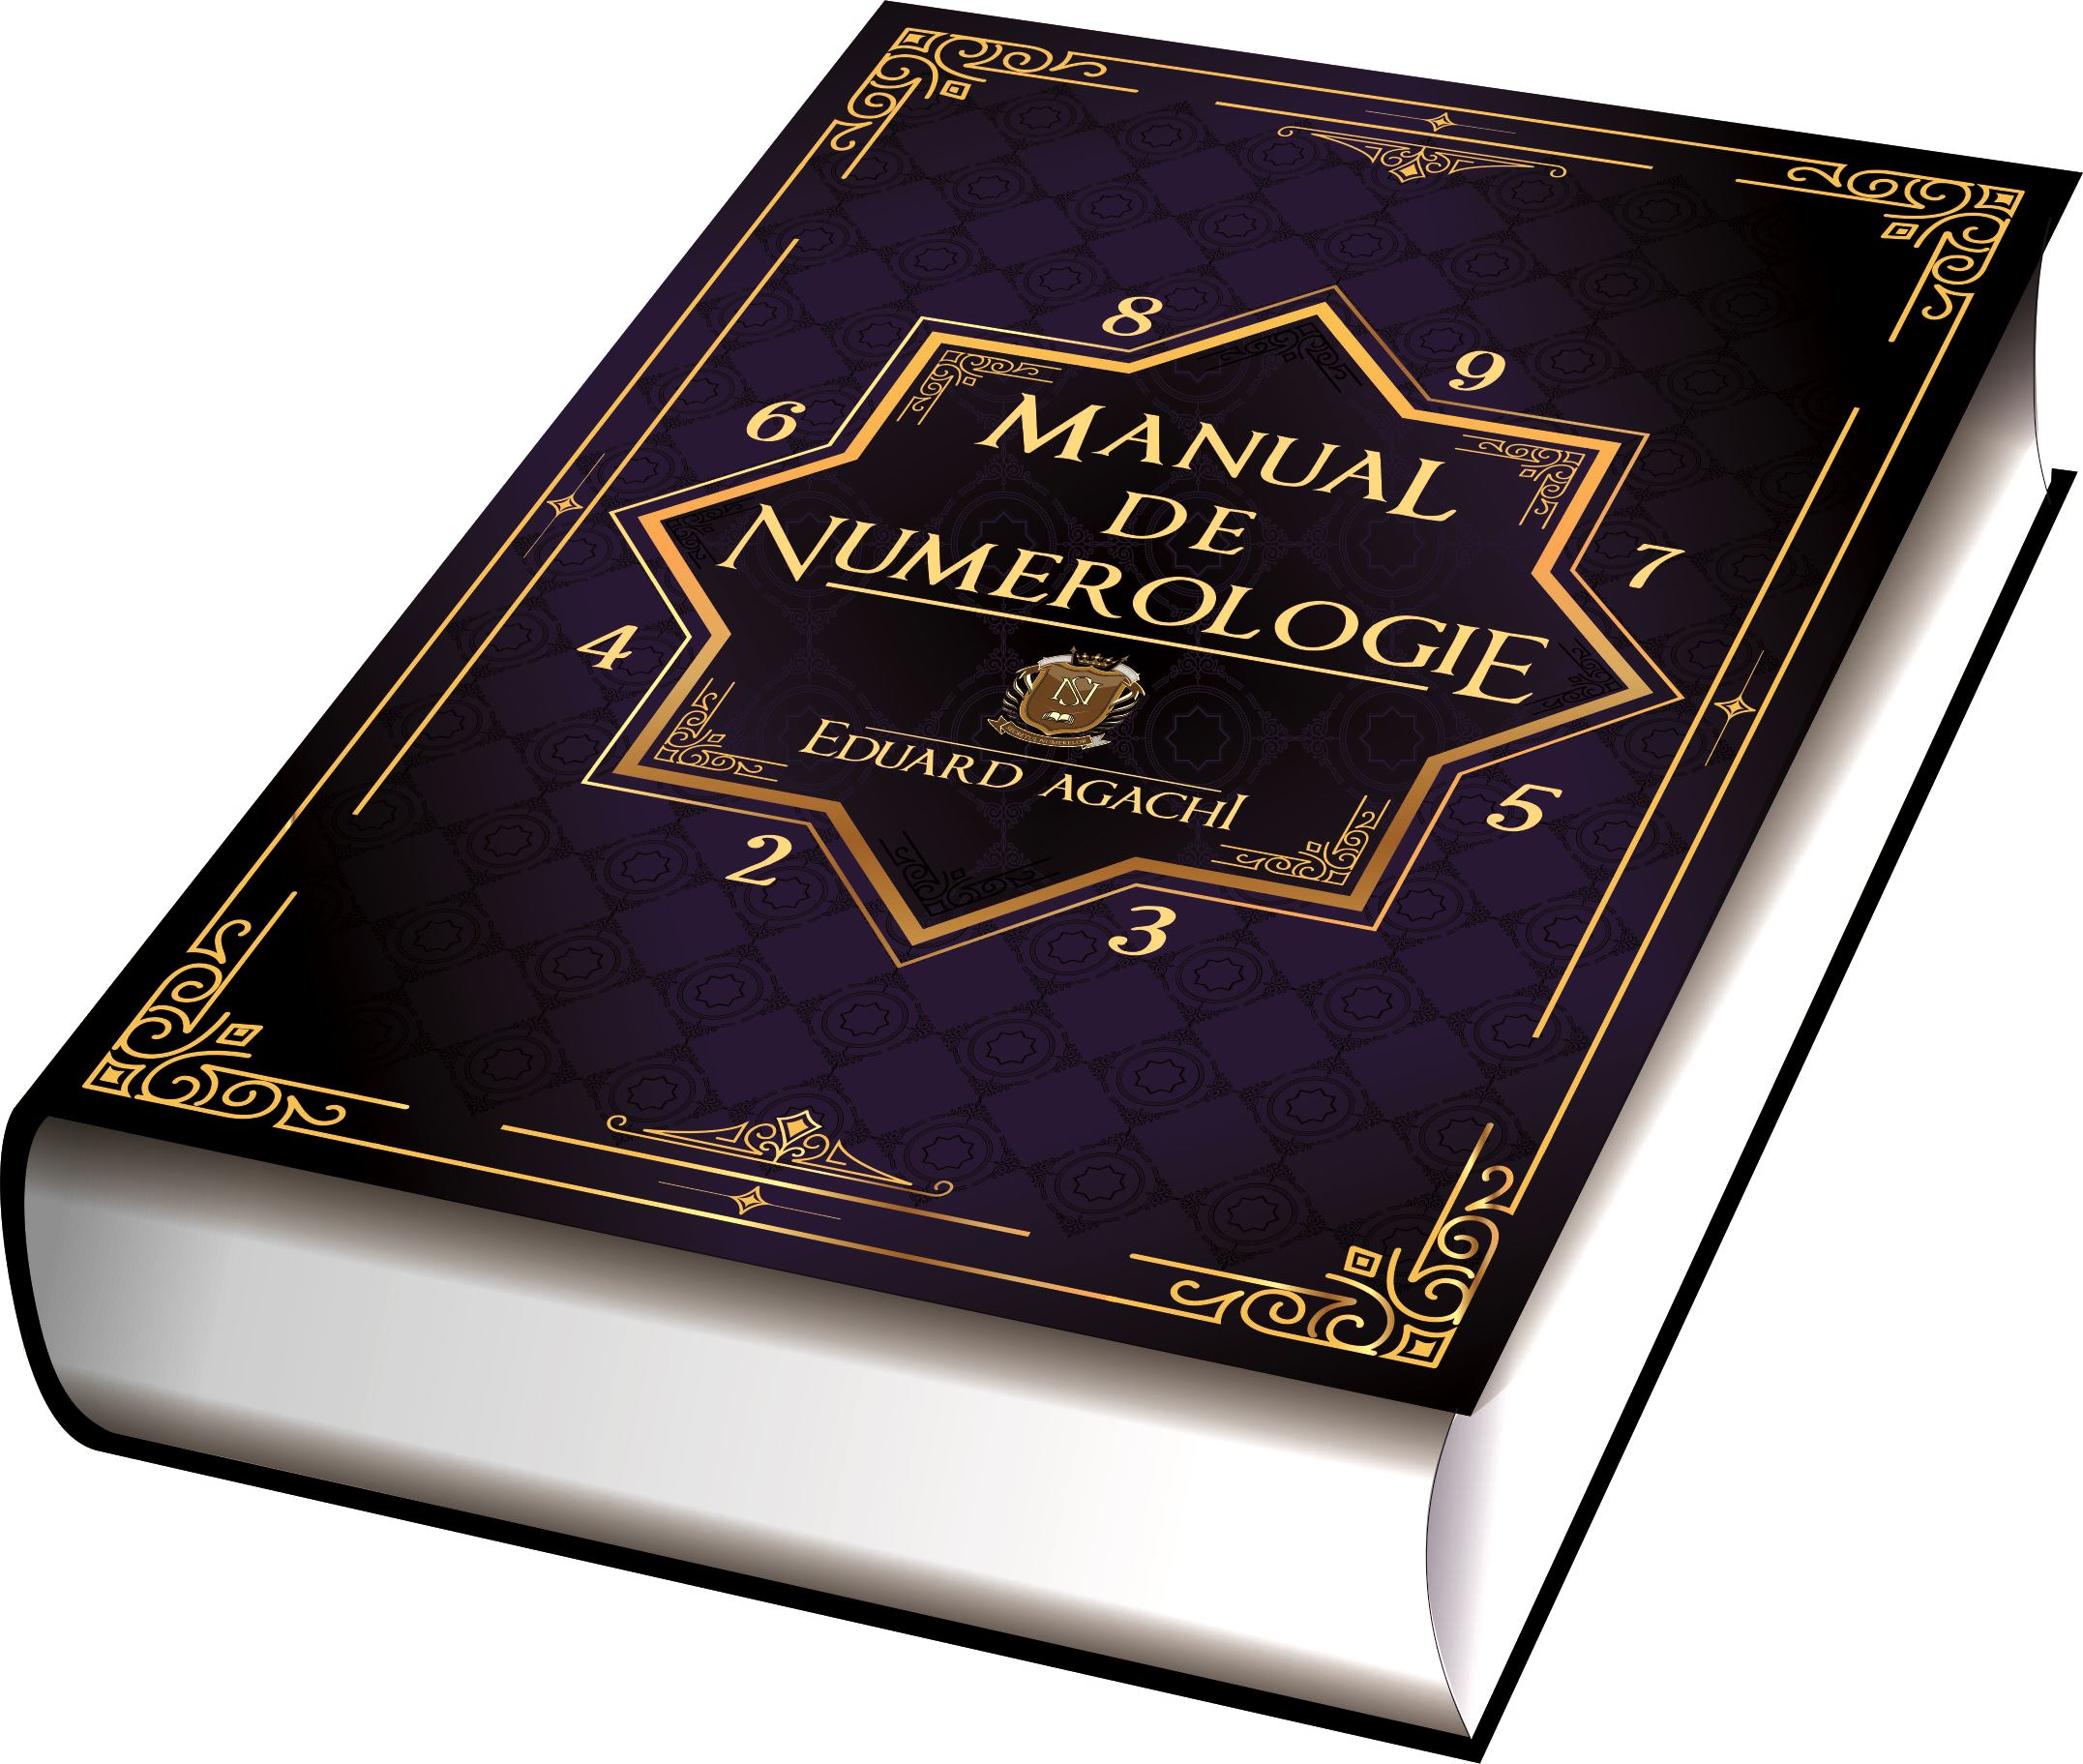 coadă cruce singuratic  Manual de Numerologie – Eduard Agachi – Cărți cu Sens